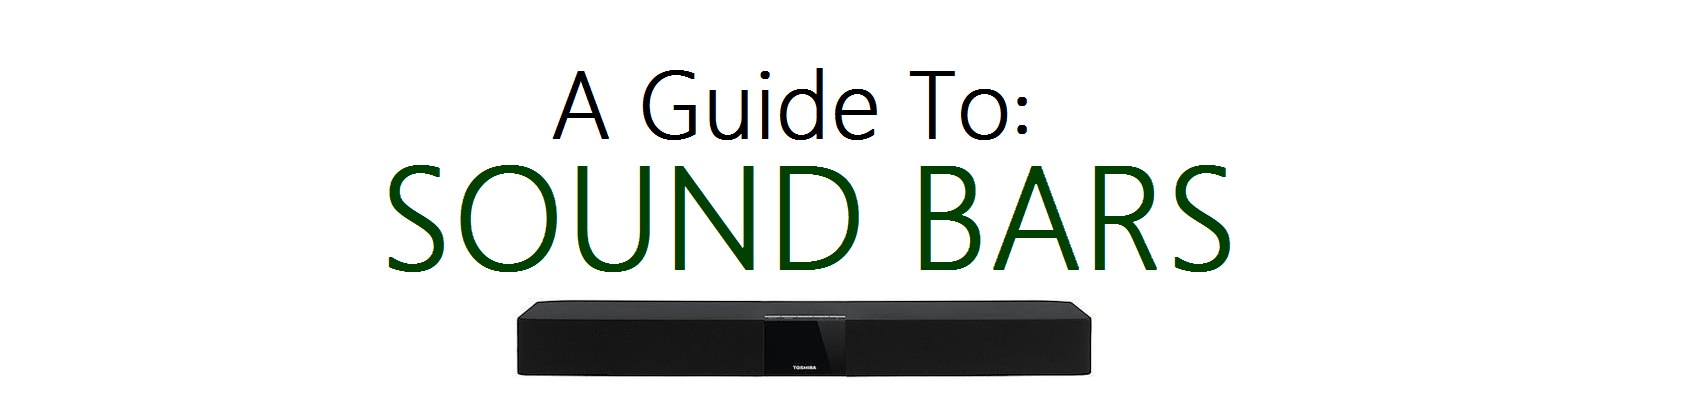 sound bar guide